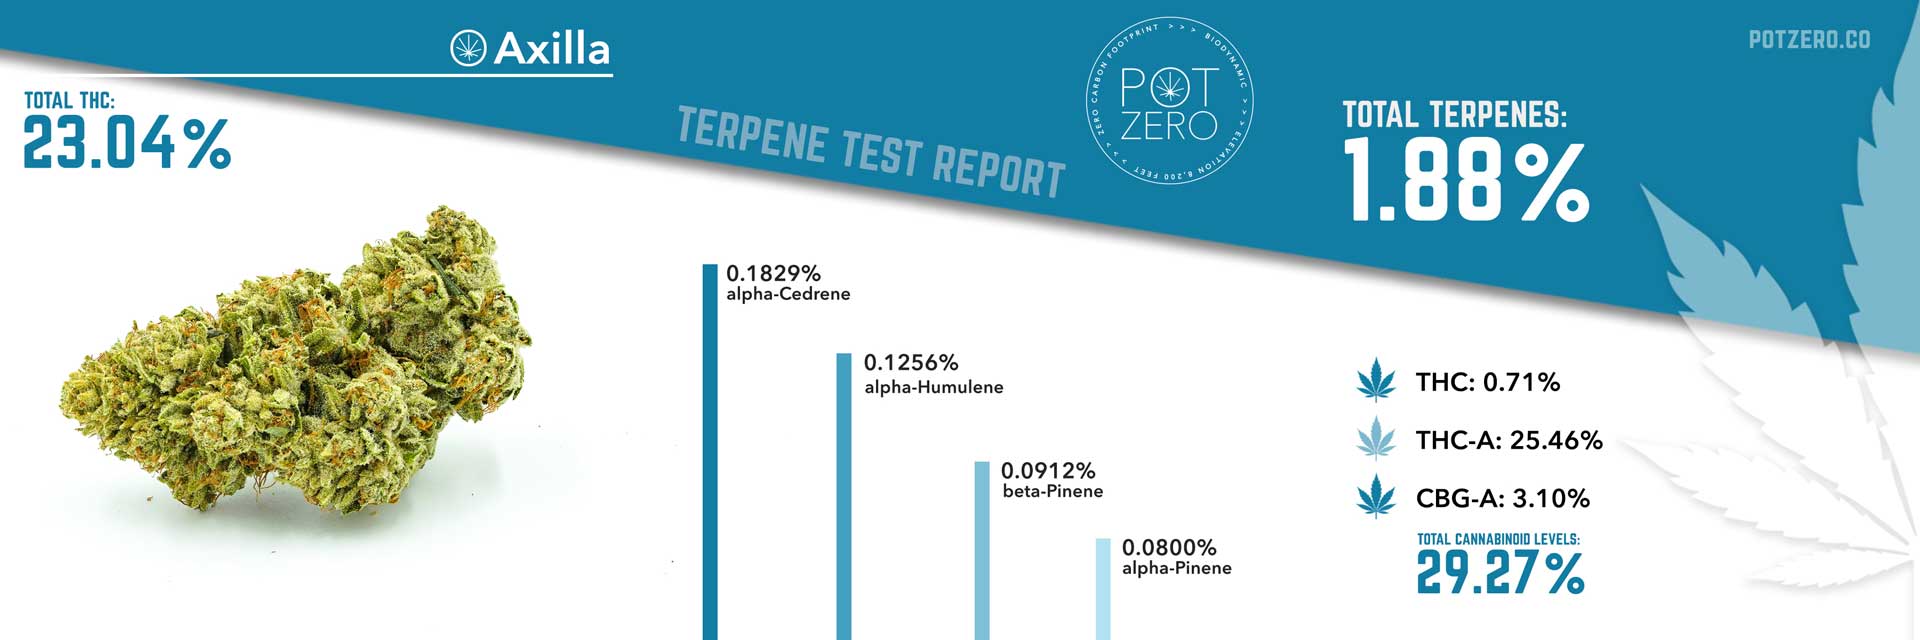 axilla strain terpene test report